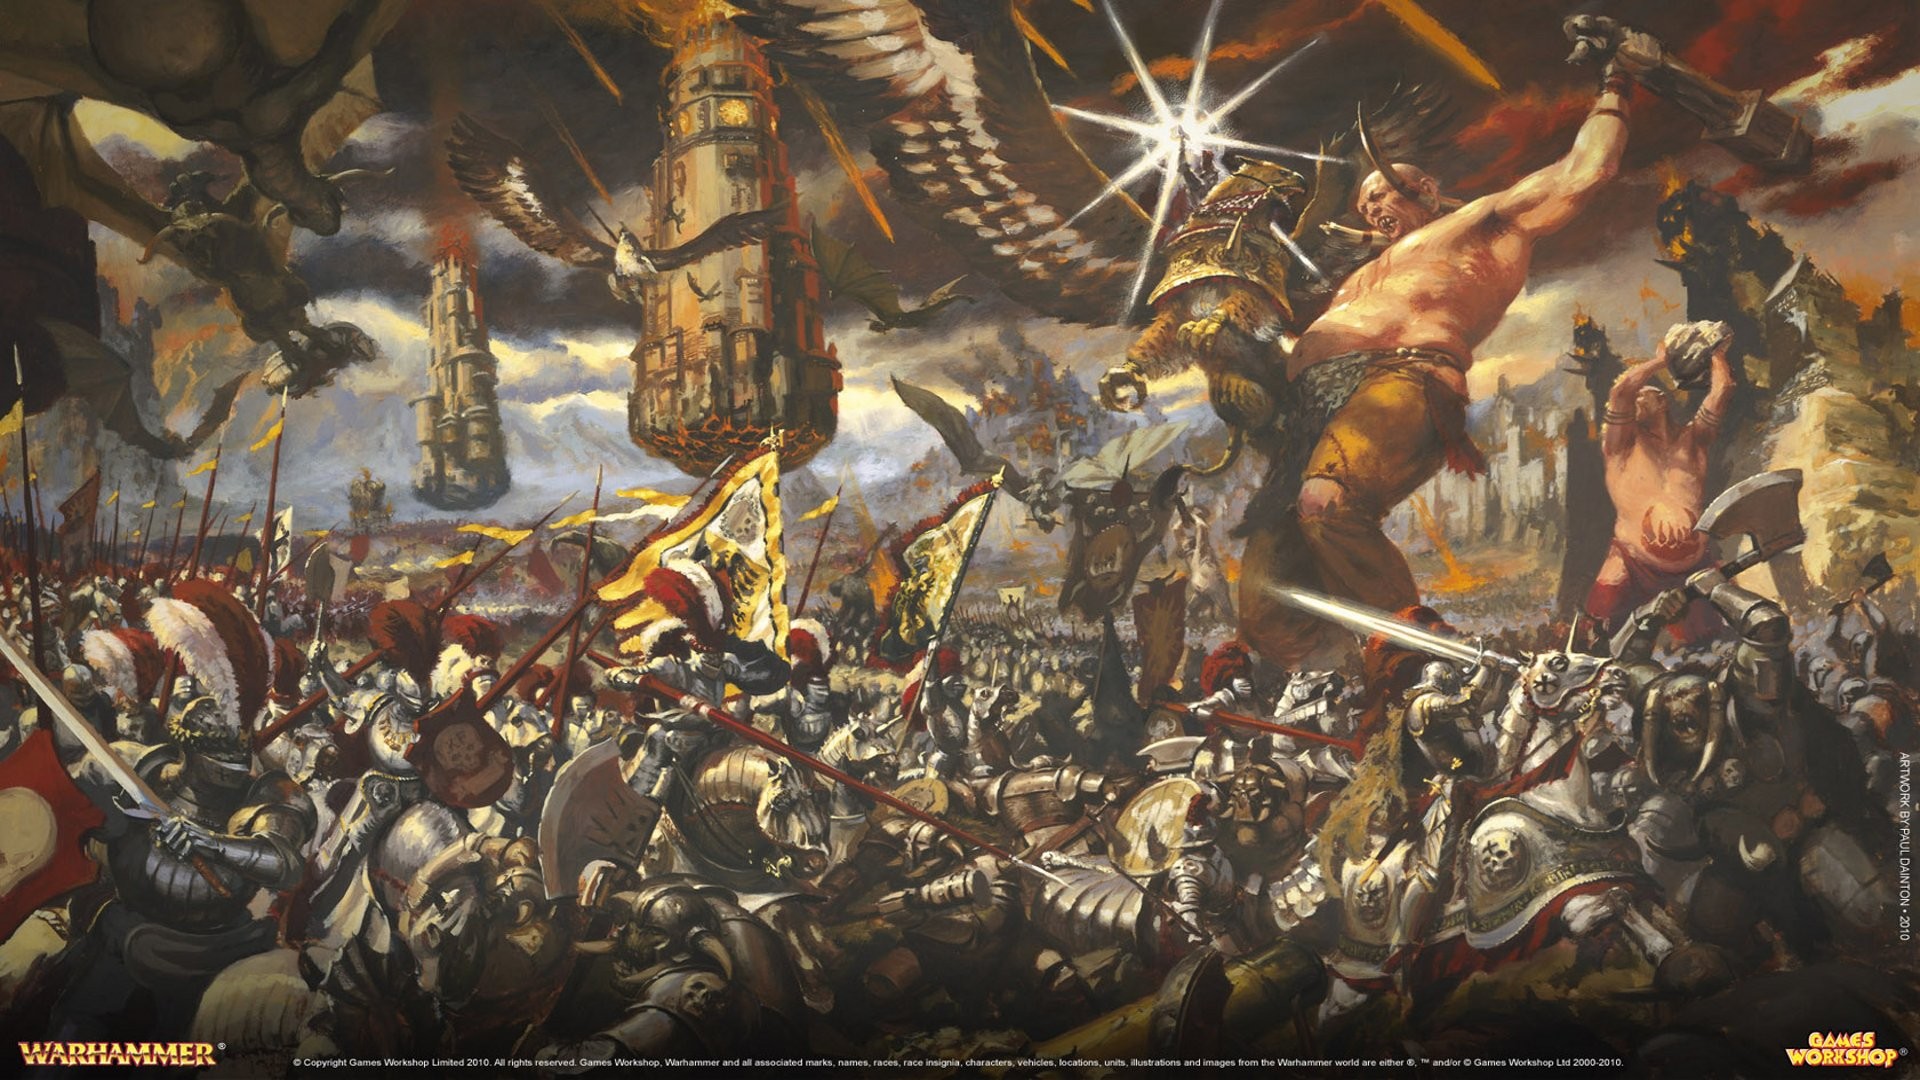 1920x1080 Computerspiele - Warhammer Wallpaper